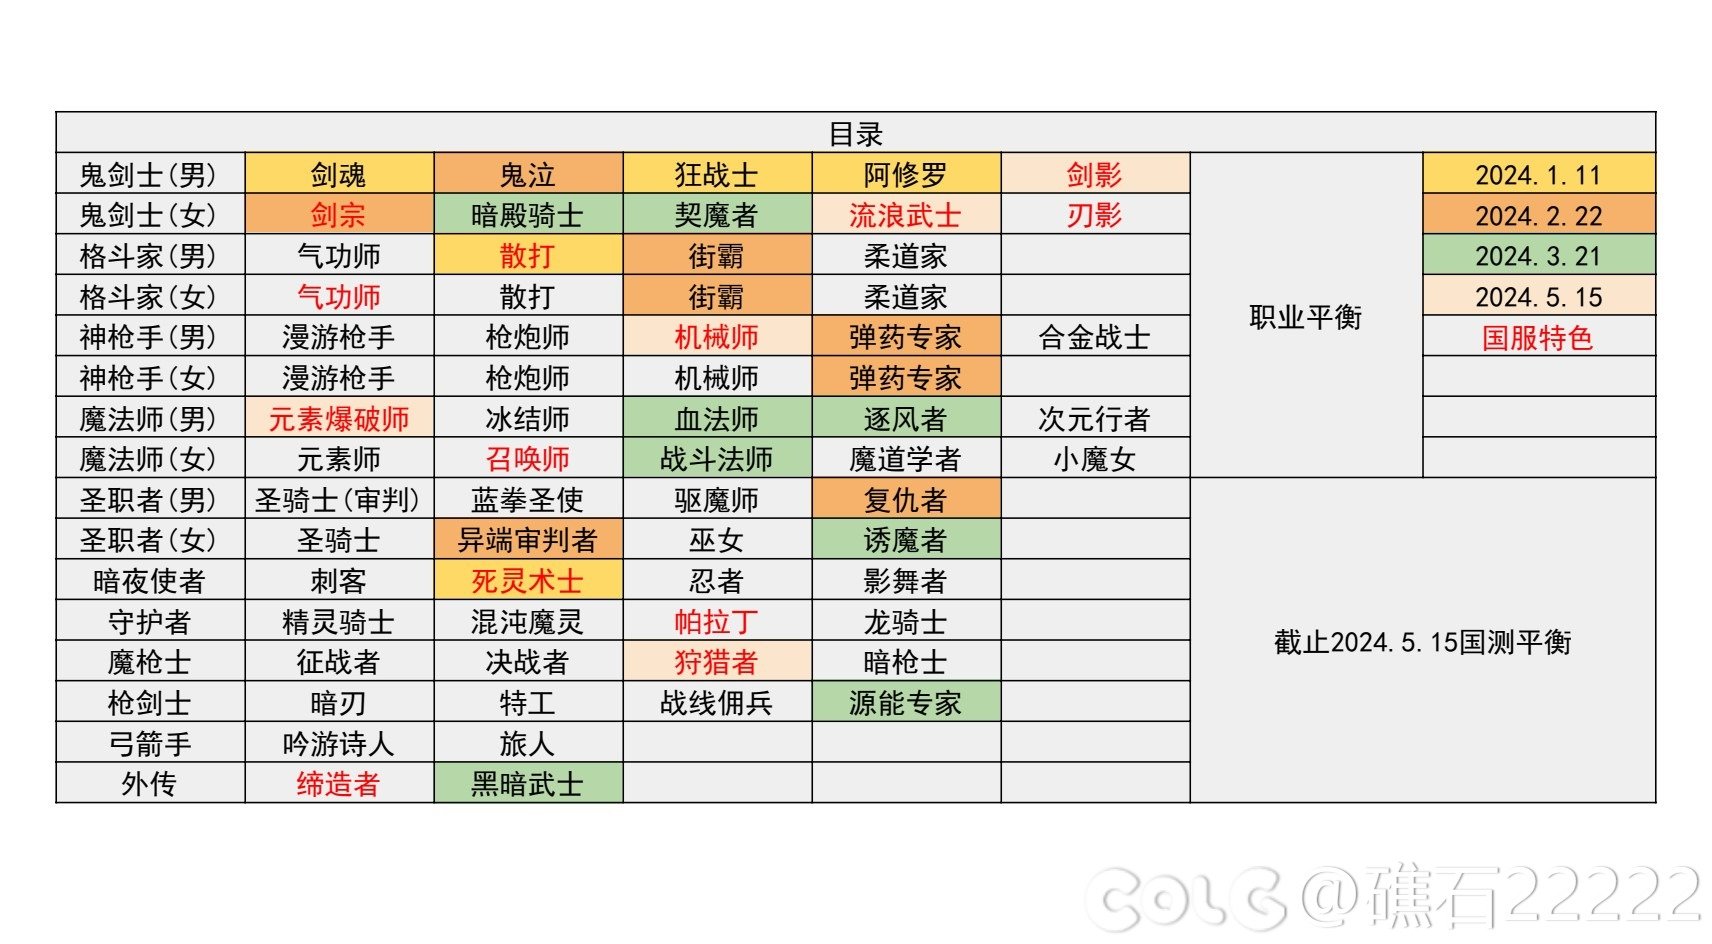 【国服现状】110版本输出职业数据表(国正5.15)(最新)1